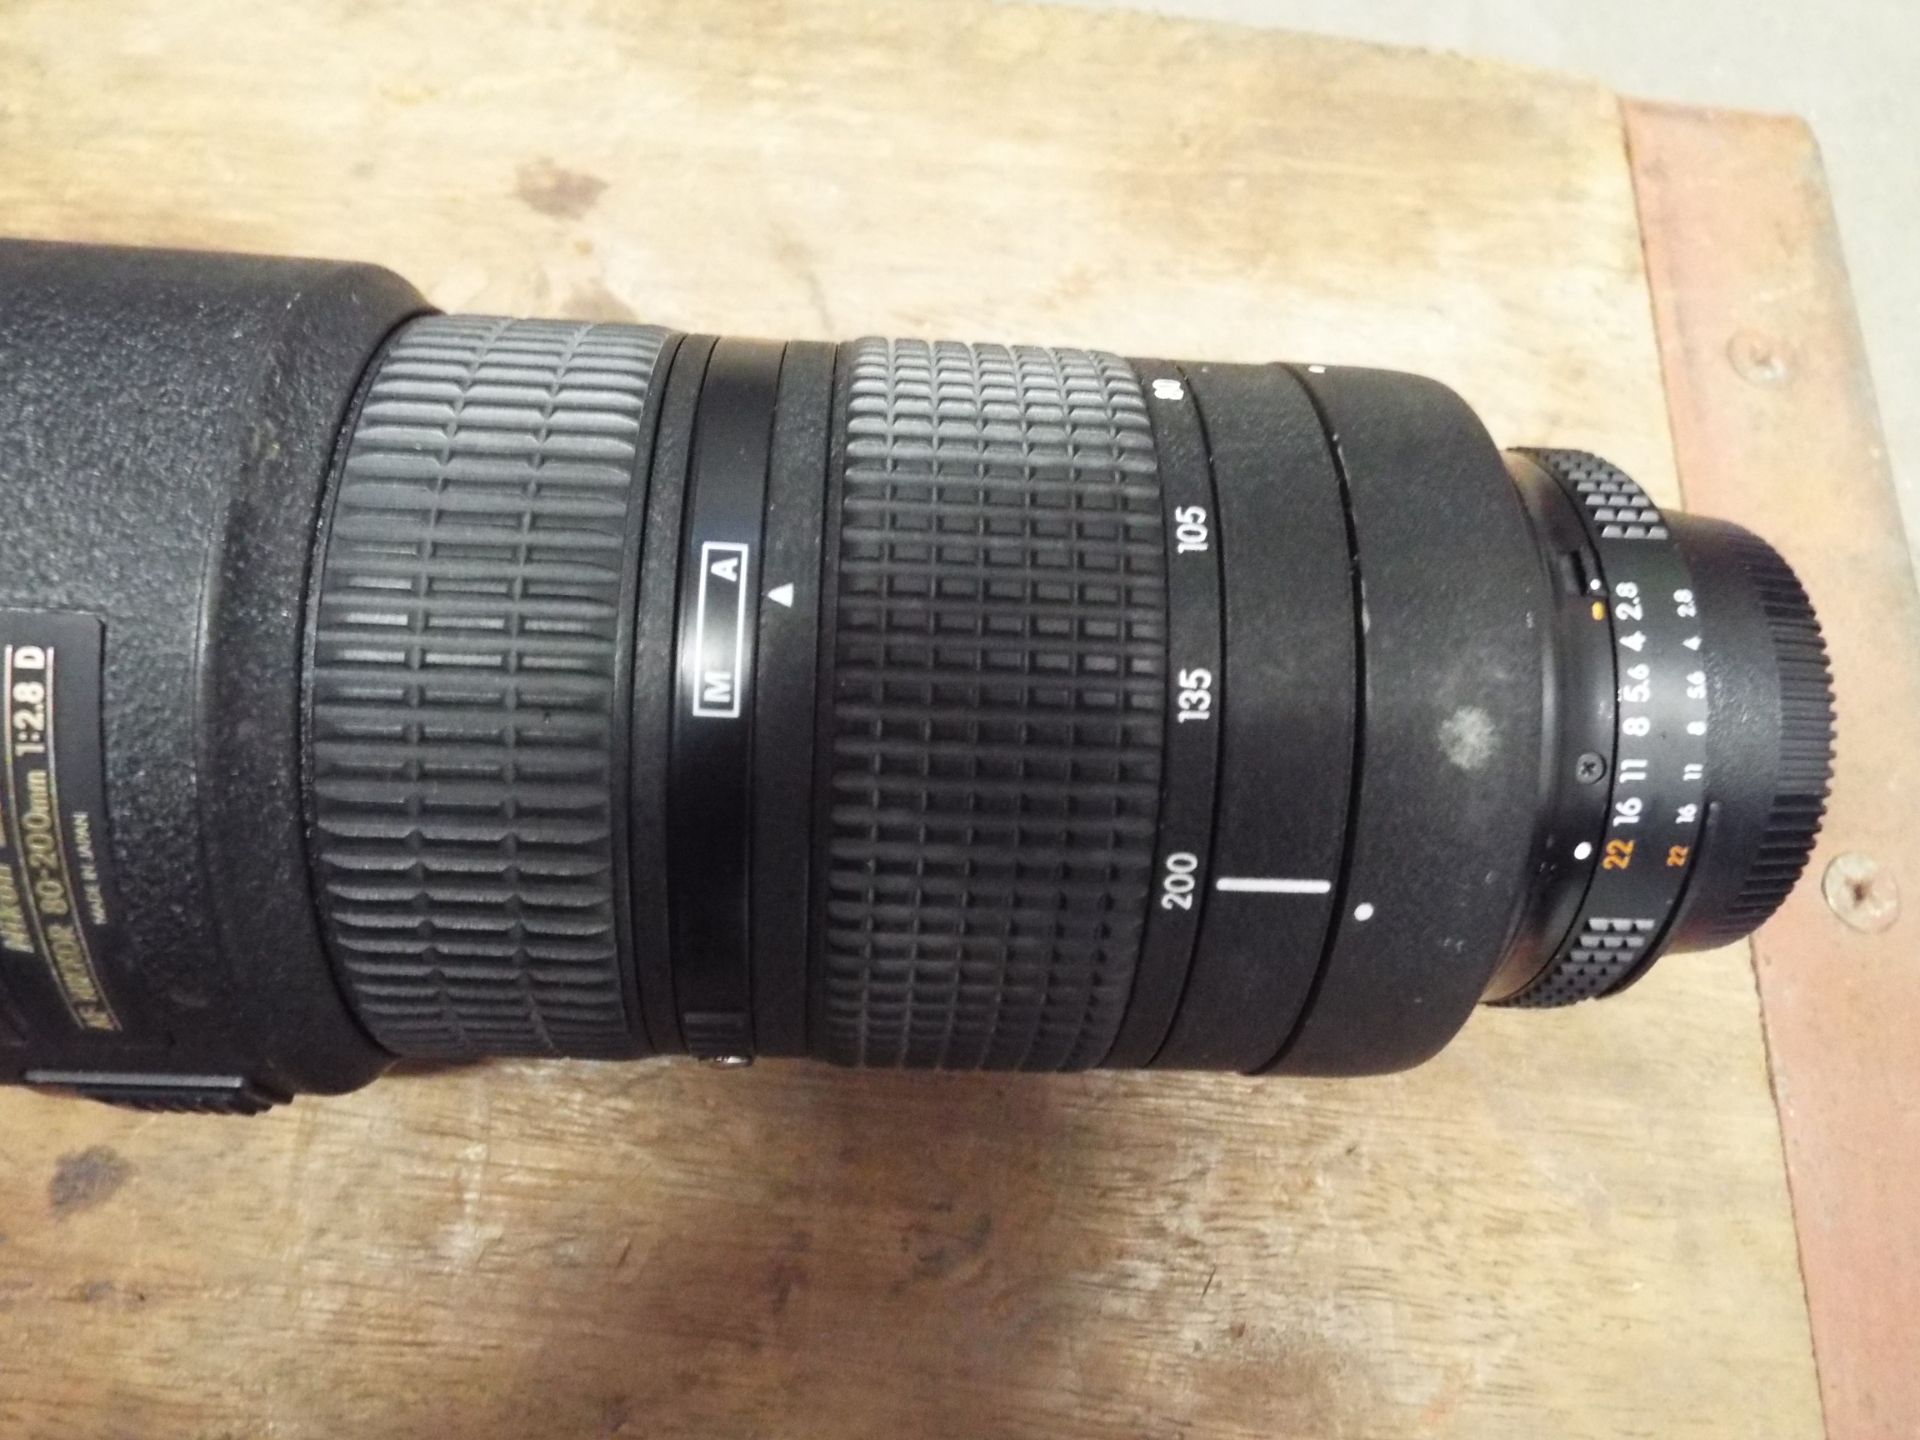 Nikon ED AF Nikkor 80-200mm 1:2.8 D Lense with Leather Carry Case - Image 4 of 7